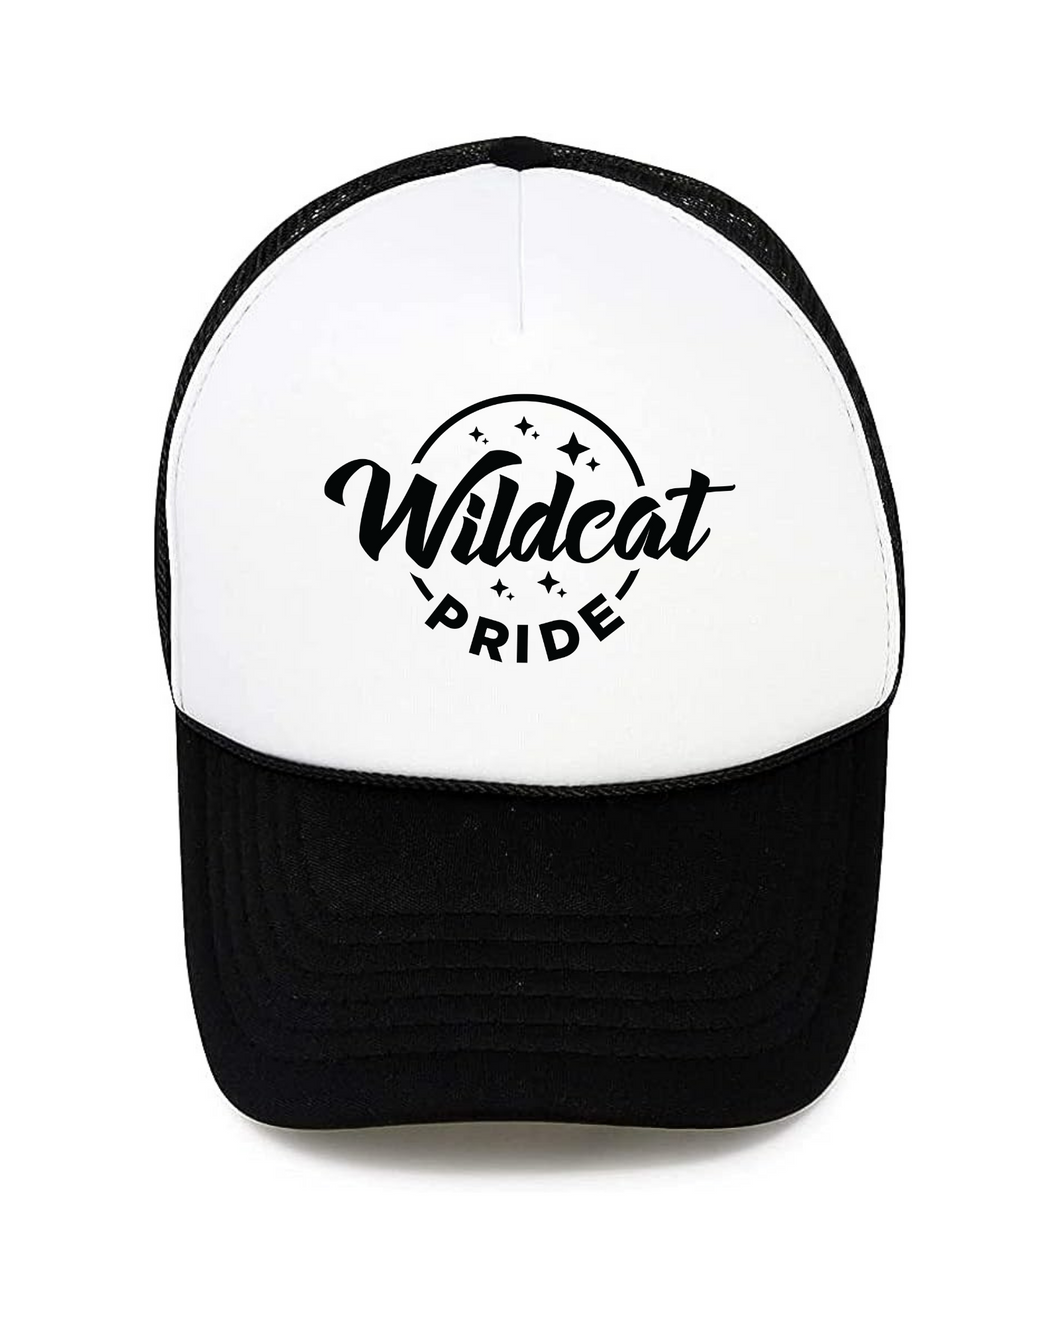 wildcat pride trucker hat